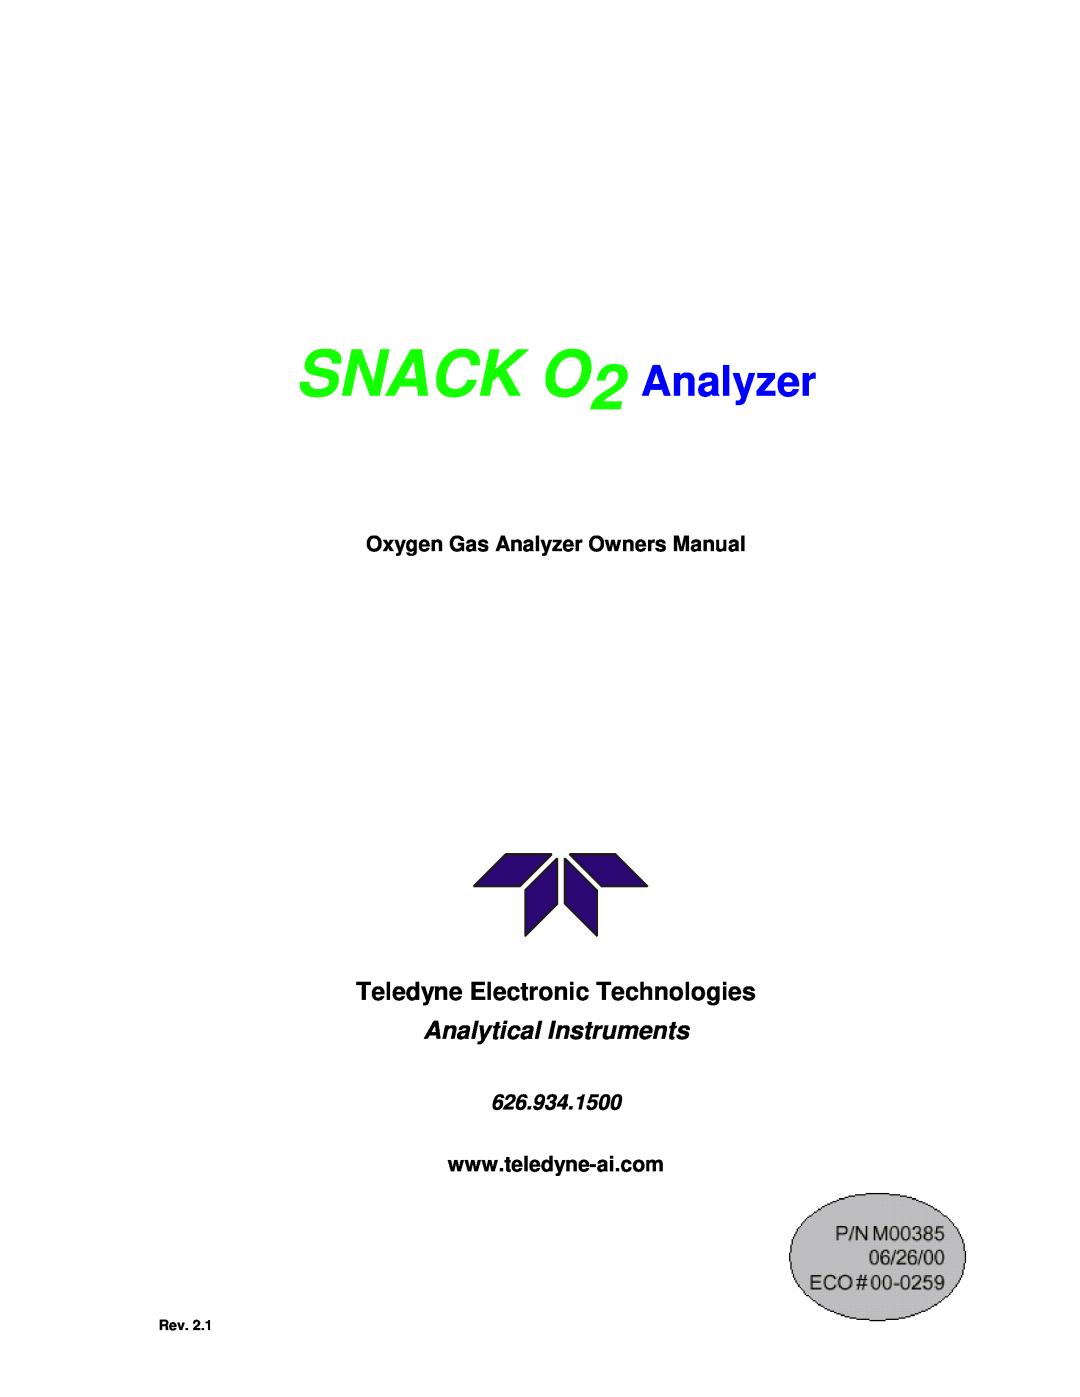 Teledyne pjnmoo385 owner manual Teledyne Electronic Technologies, Oxygen Gas Analyzer Owners Manual, SNACK O2 Analyzer 